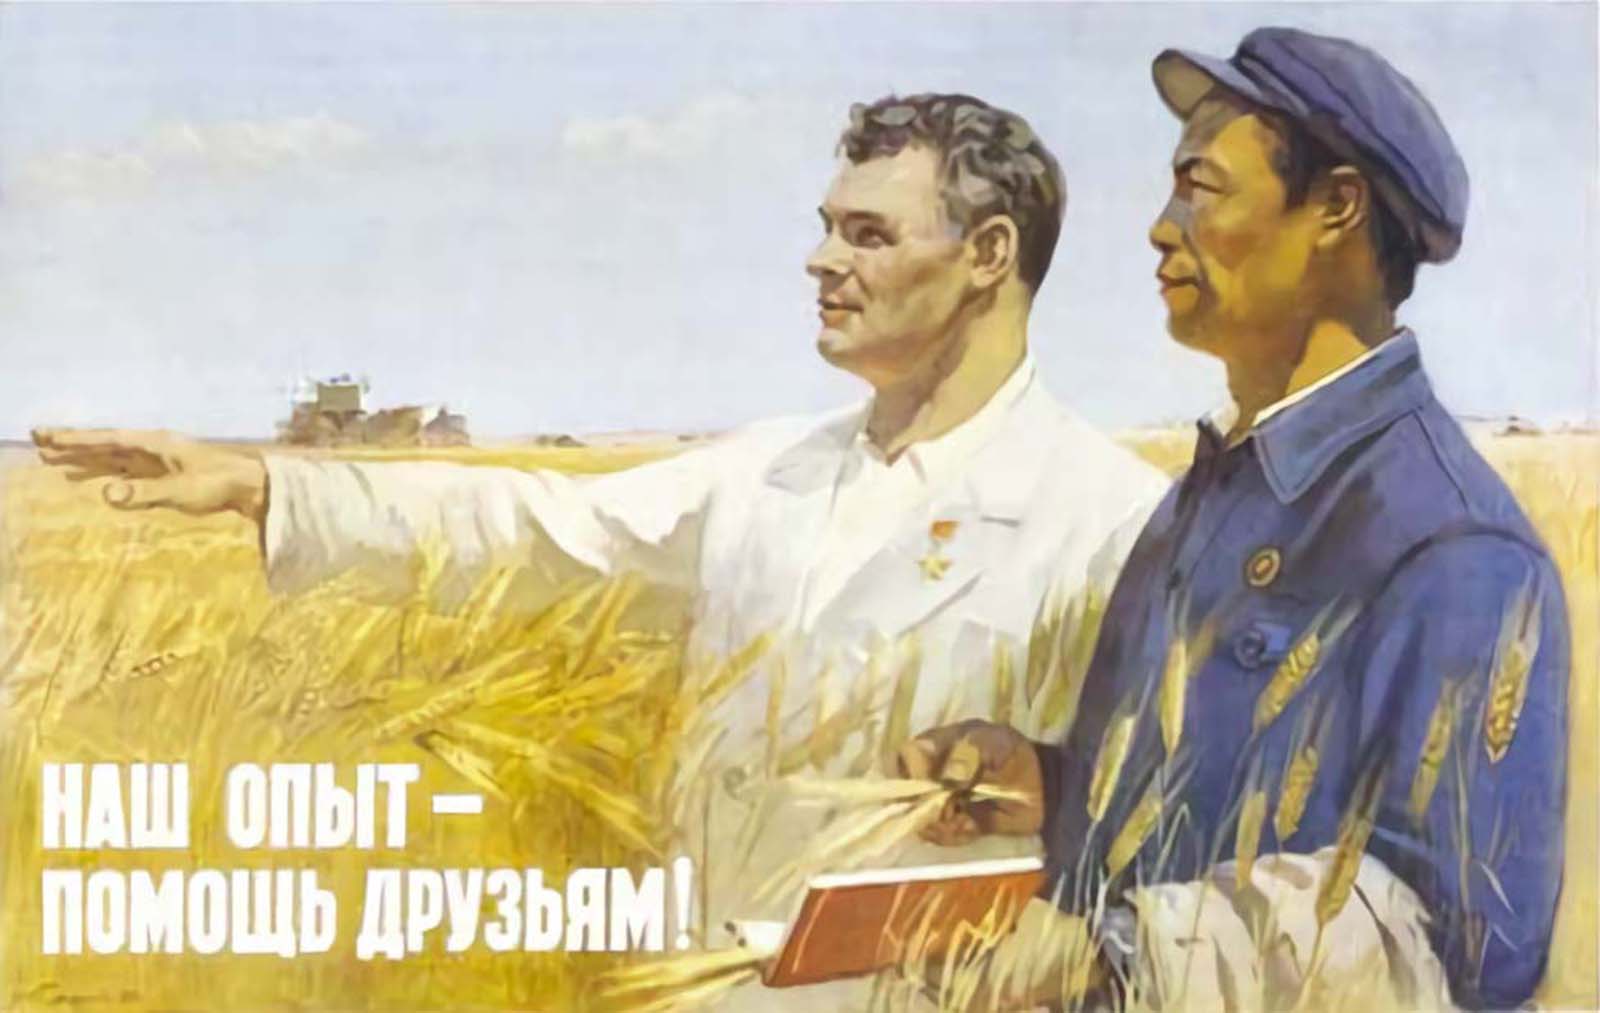 Les affiches de propagande communiste sino-soviétique involontairement homoérotiques, 1950-1960